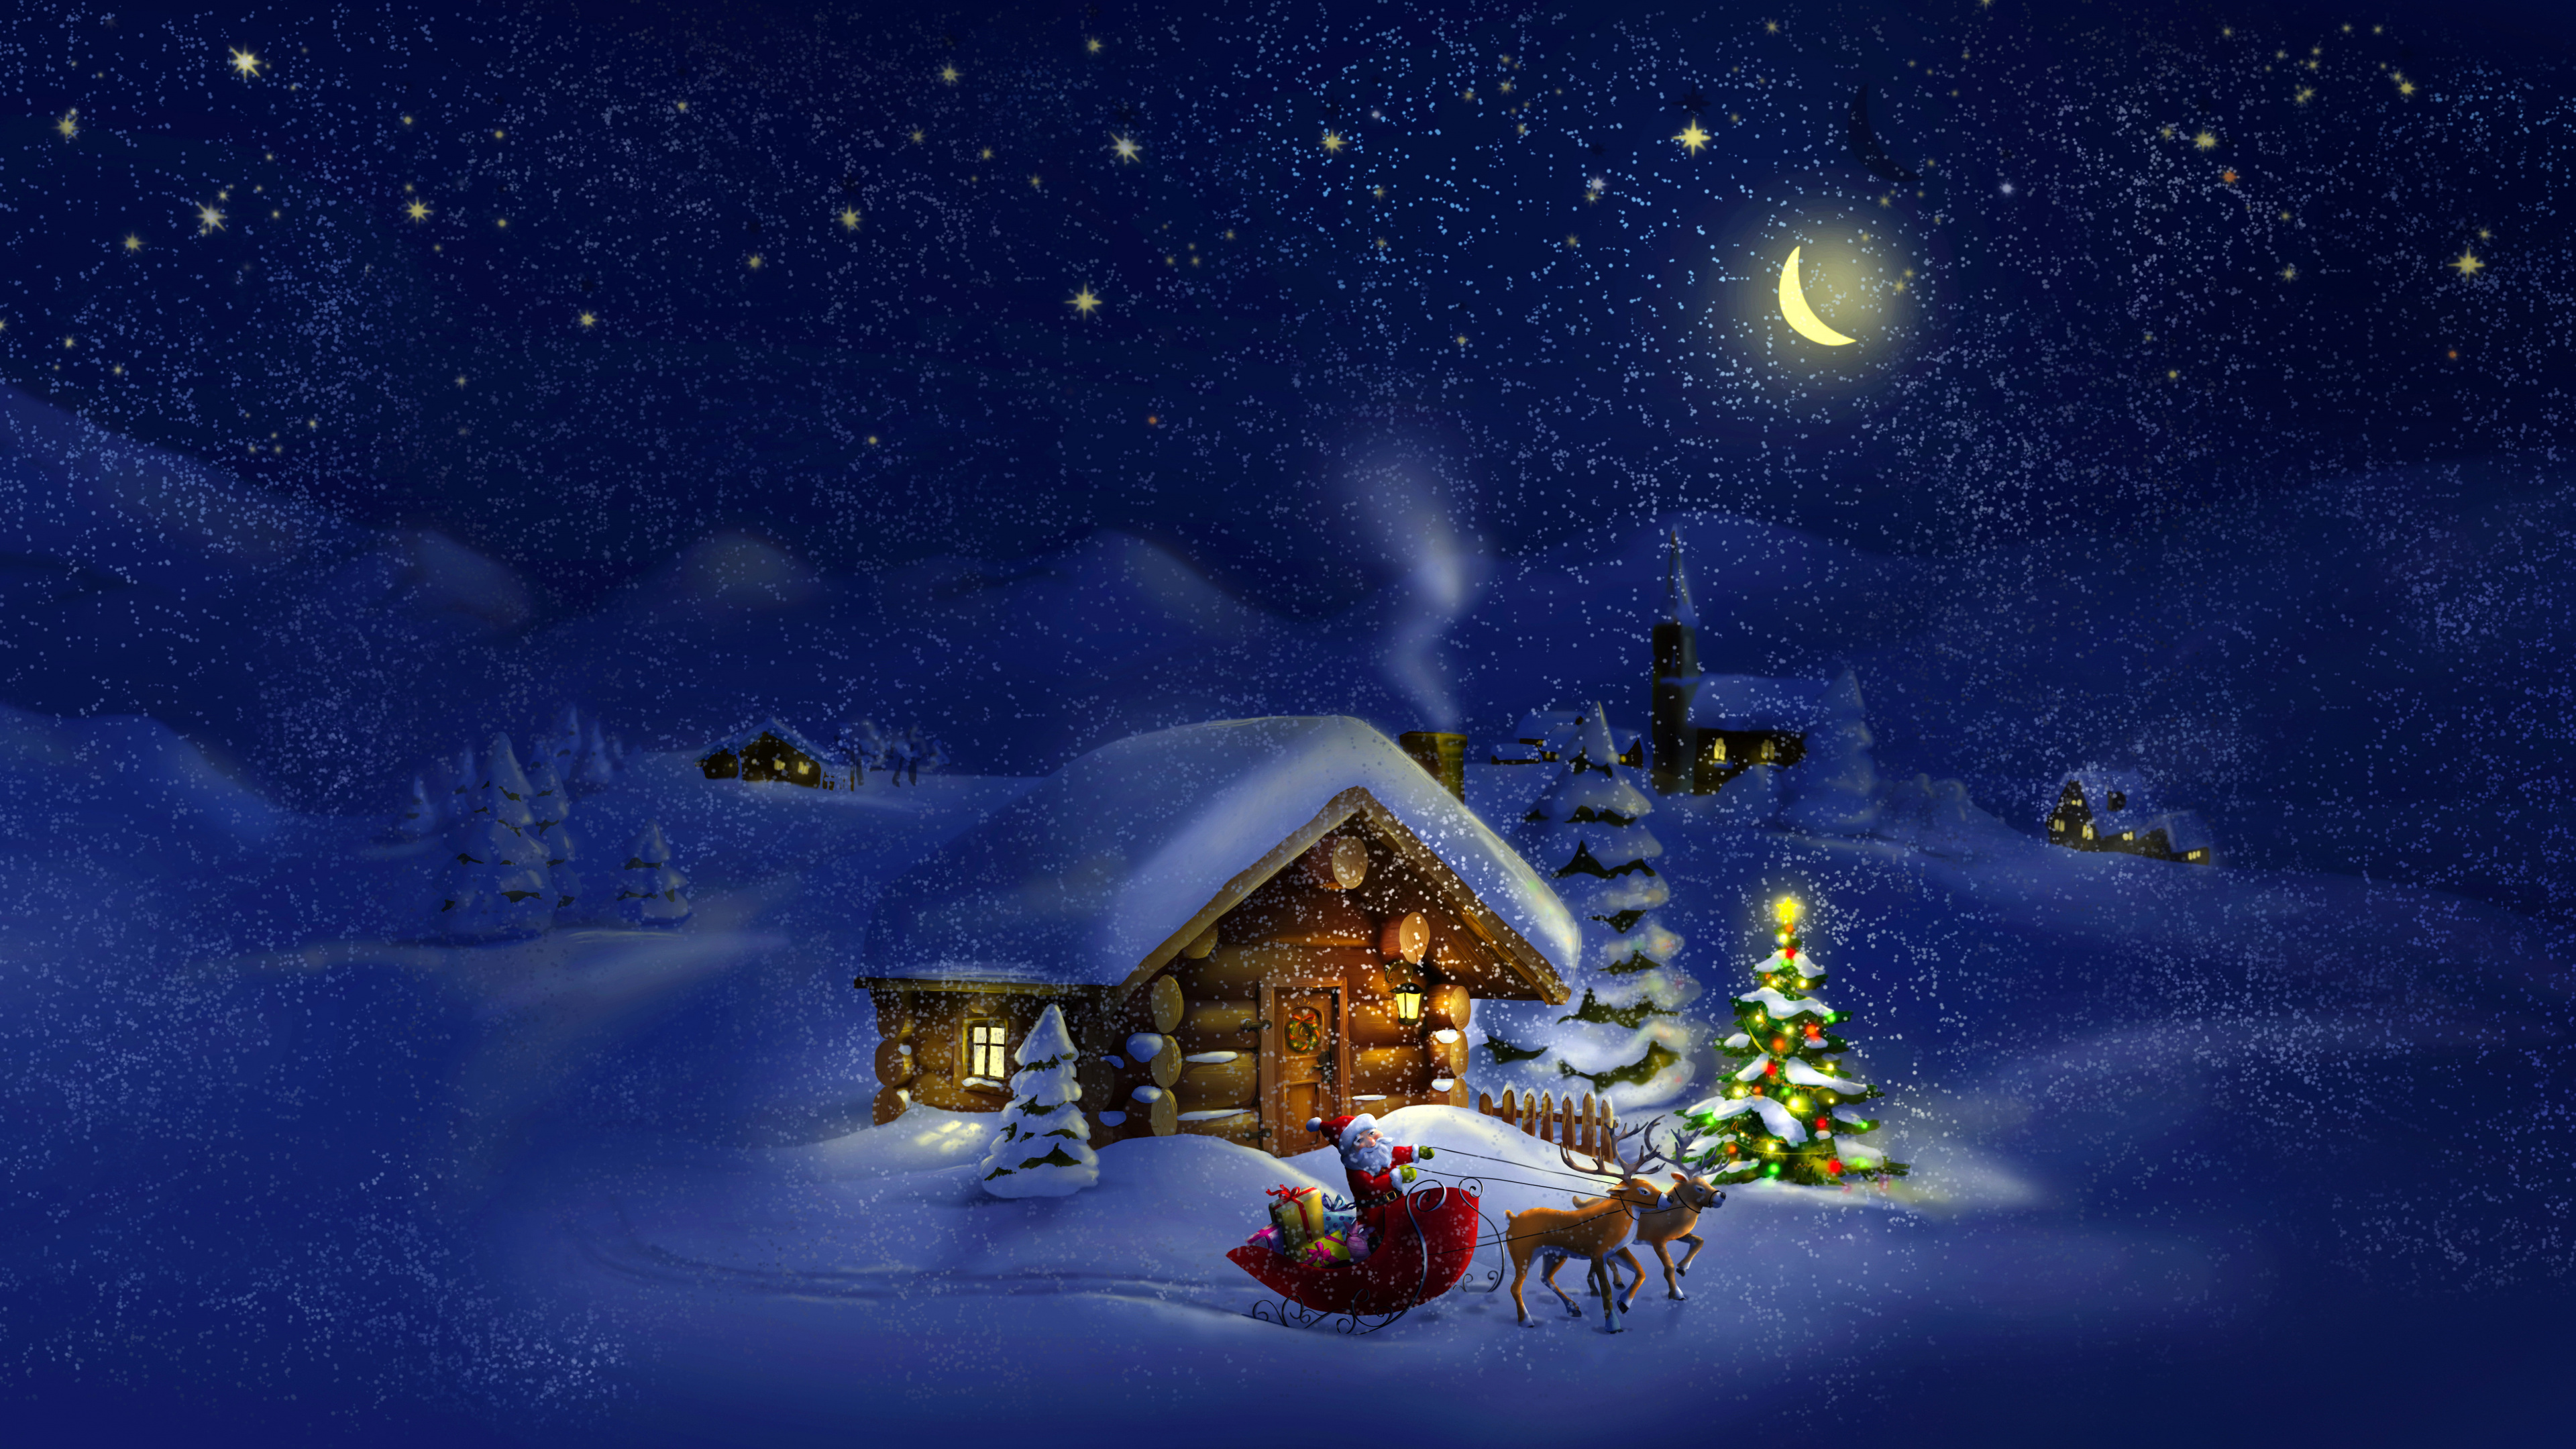 Weihnachten, Weihnachtsmann, Winter, Schnee, Nacht. Wallpaper in 3840x2160 Resolution